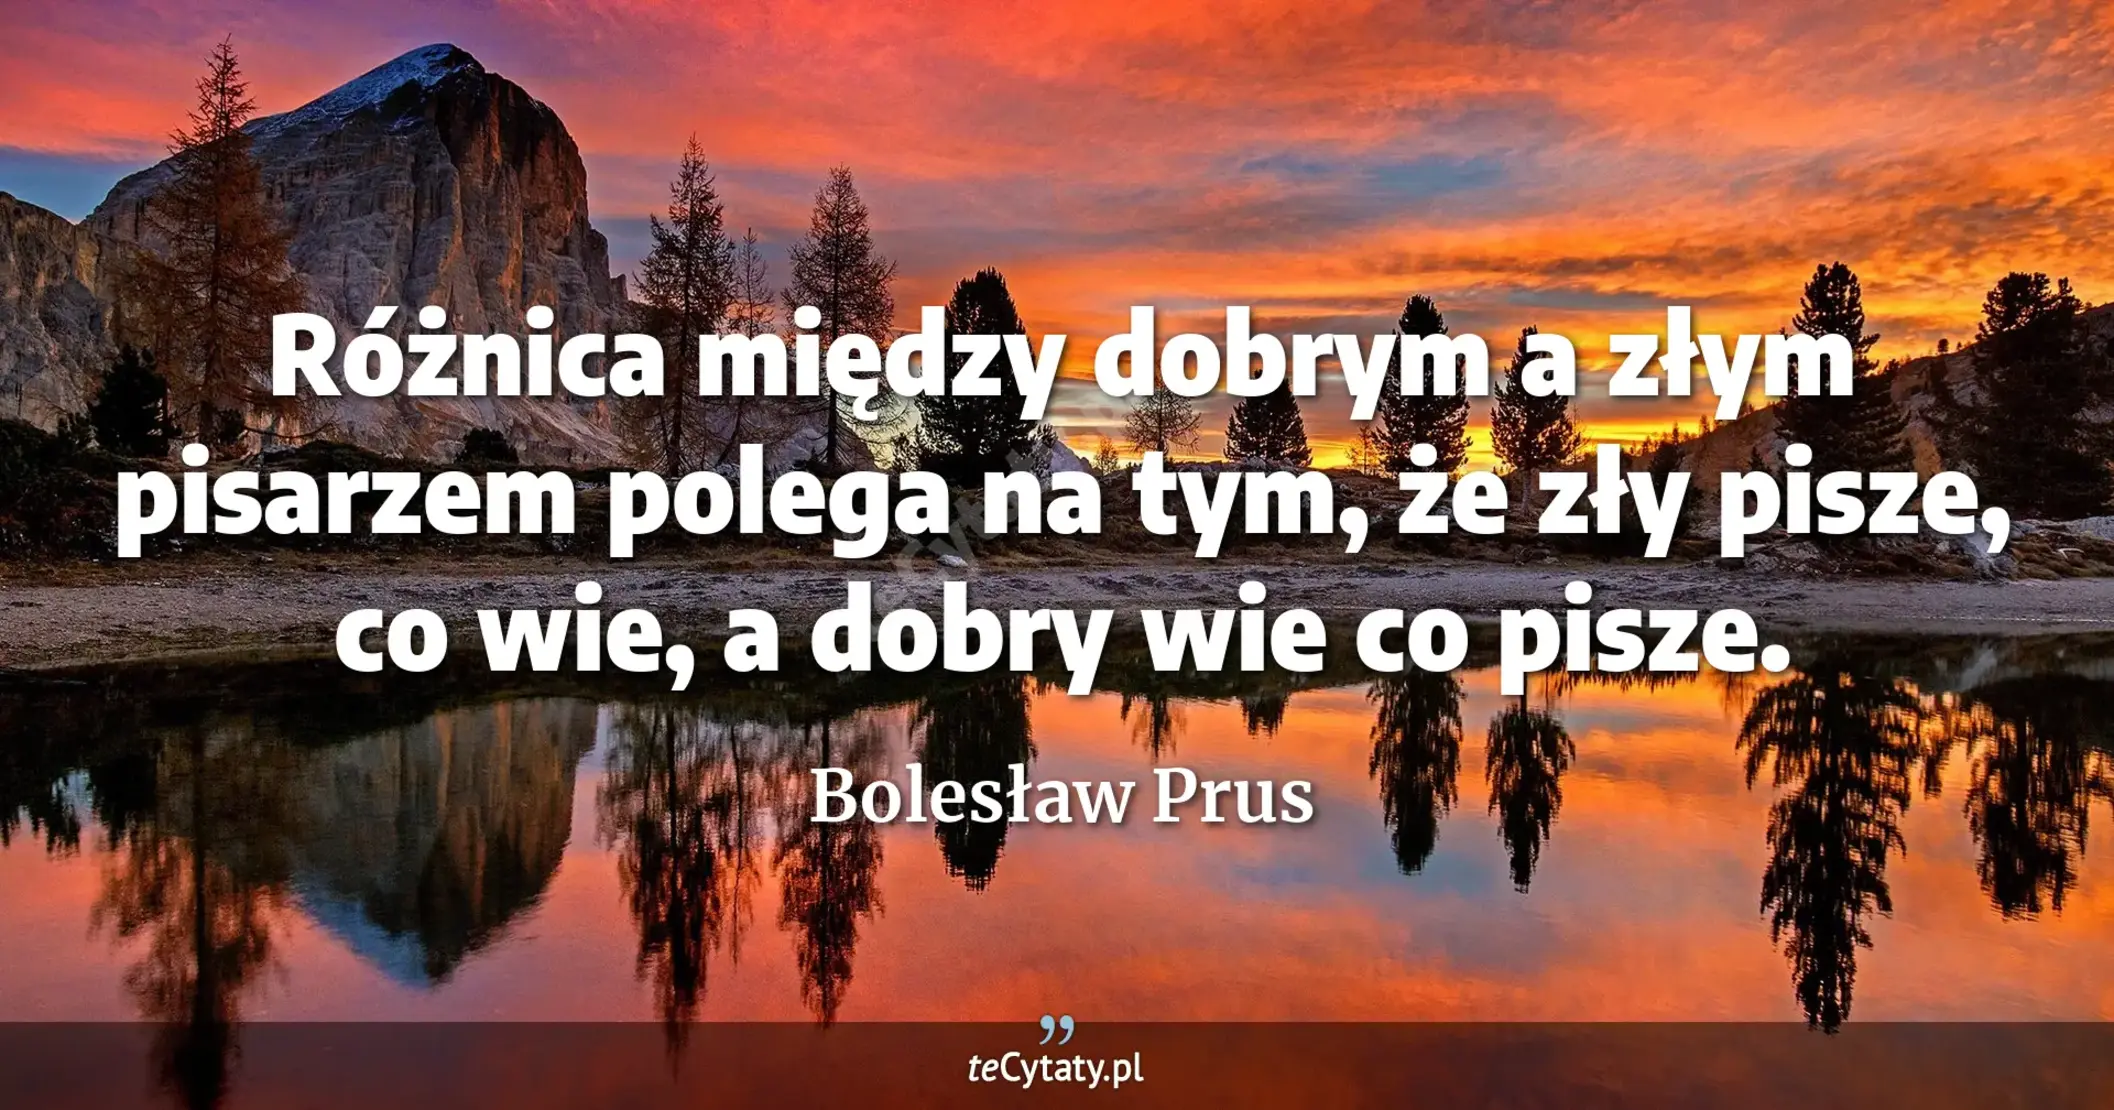 Różnica między dobrym a złym pisarzem polega na tym, że zły pisze, co wie, a dobry wie co pisze. - Bolesław Prus